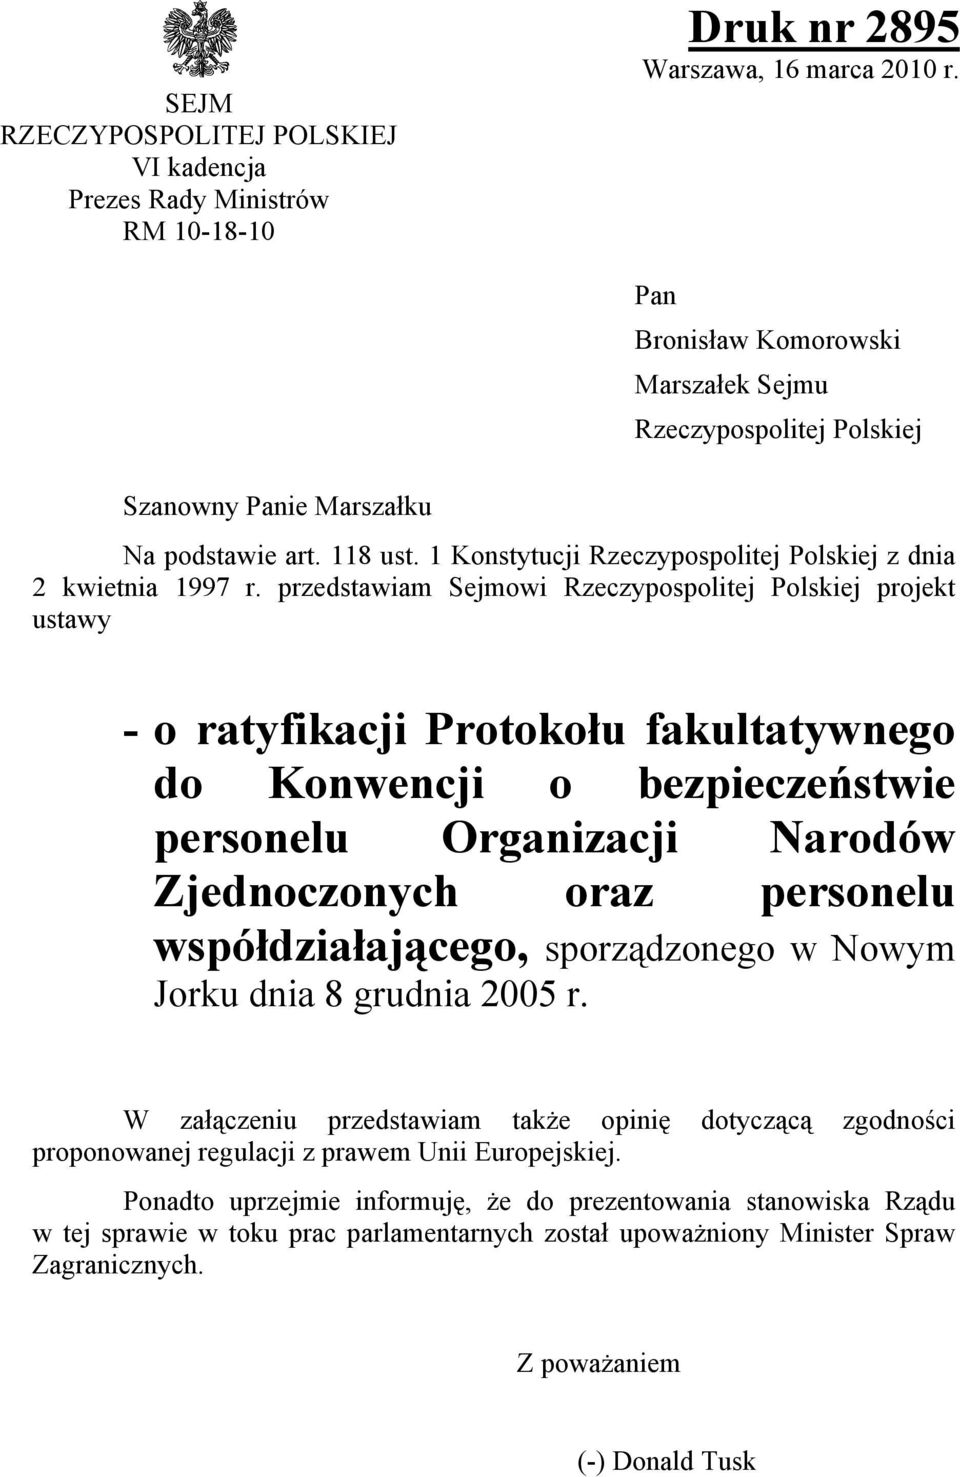 przedstawiam Sejmowi Rzeczypospolitej Polskiej projekt ustawy - o ratyfikacji Protokołu fakultatywnego do Konwencji o bezpieczeństwie personelu Organizacji Narodów Zjednoczonych oraz personelu